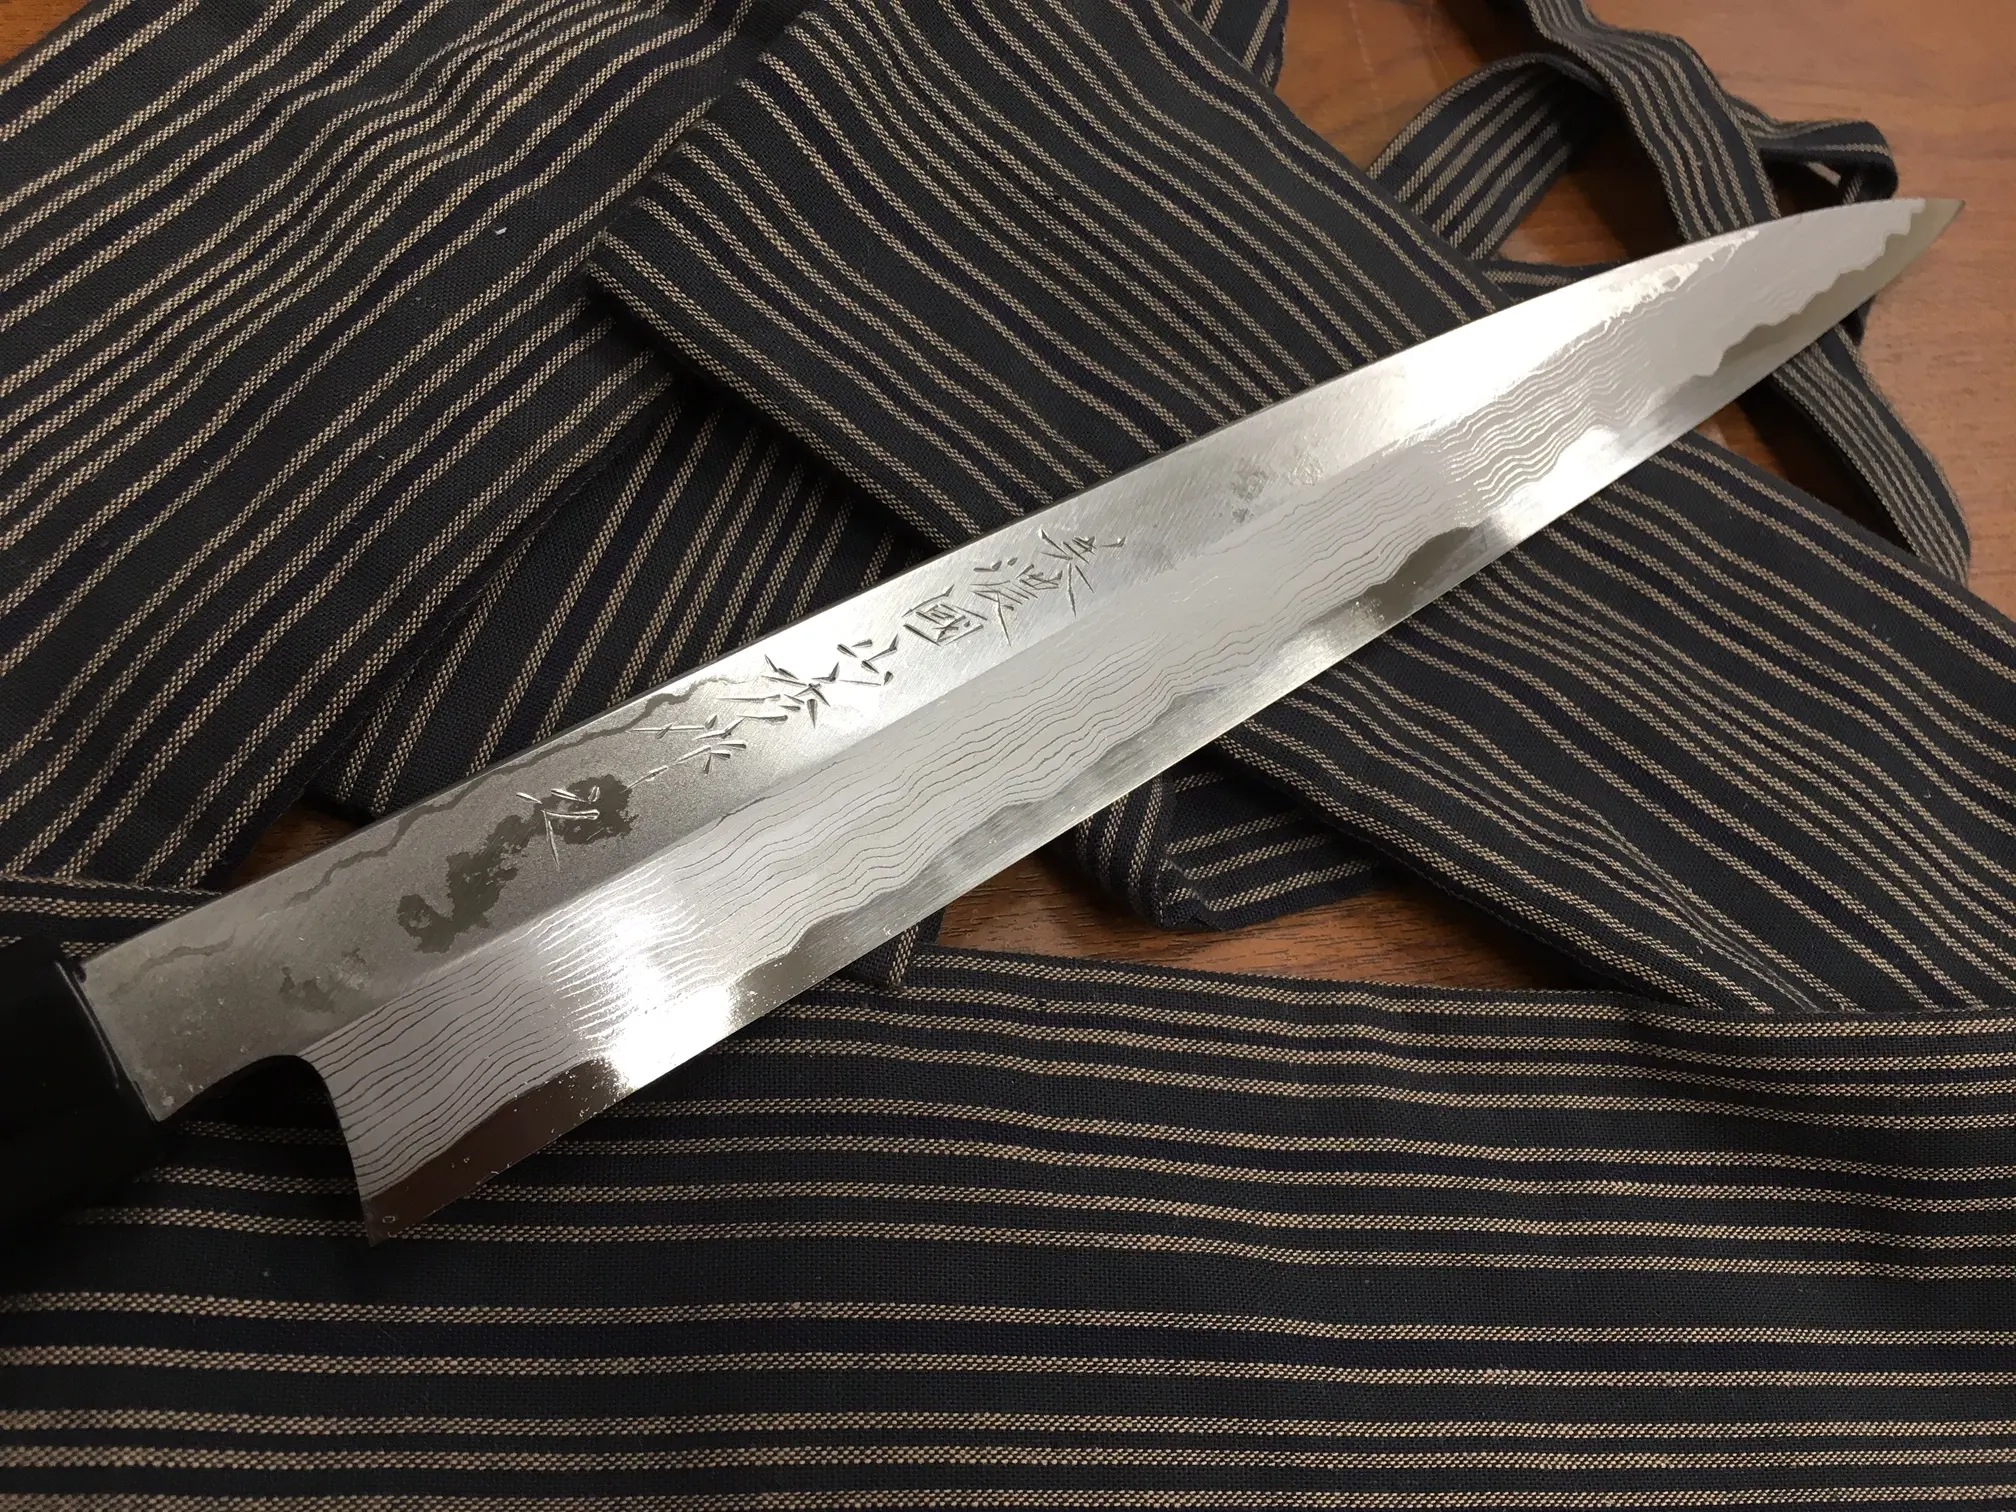 سكاكين وملحقات المطبخ اليابانية التقليدية الاحترافية